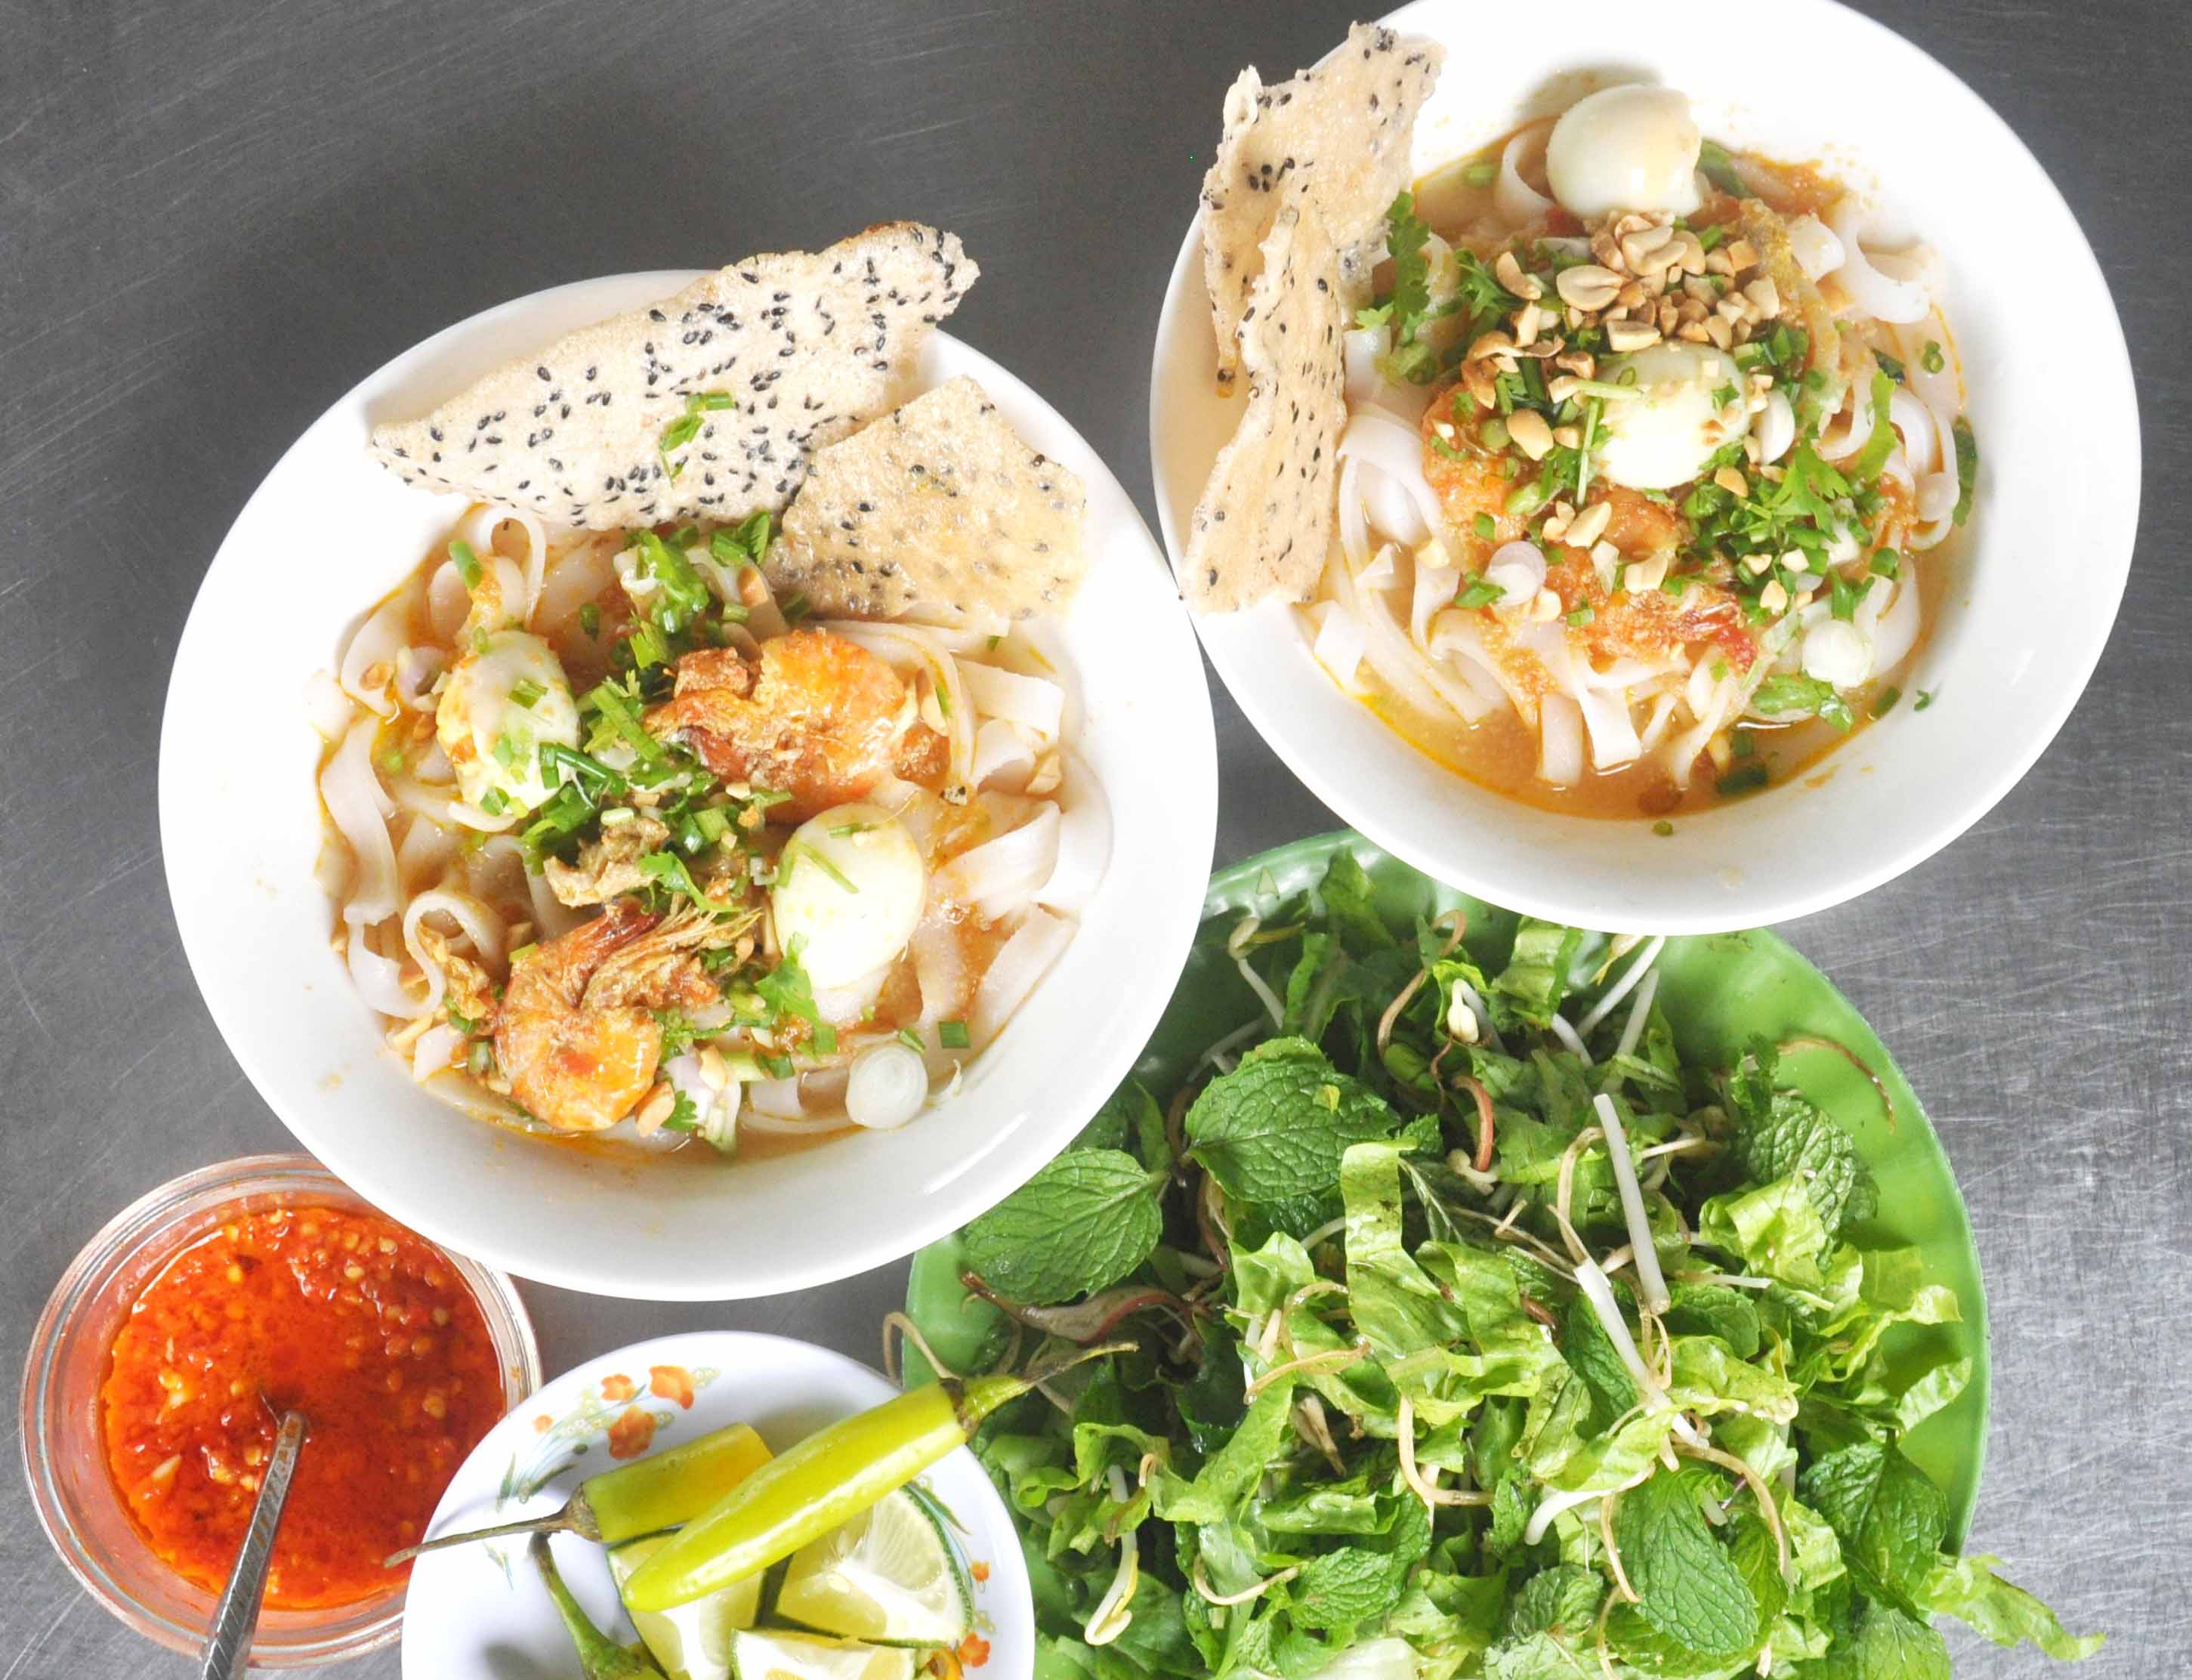 Mì Phú Chiêm là món ăn được nhiều thực khách ở TP. Pleiku ưa thích. Ảnh: Võ Thanh Thảo